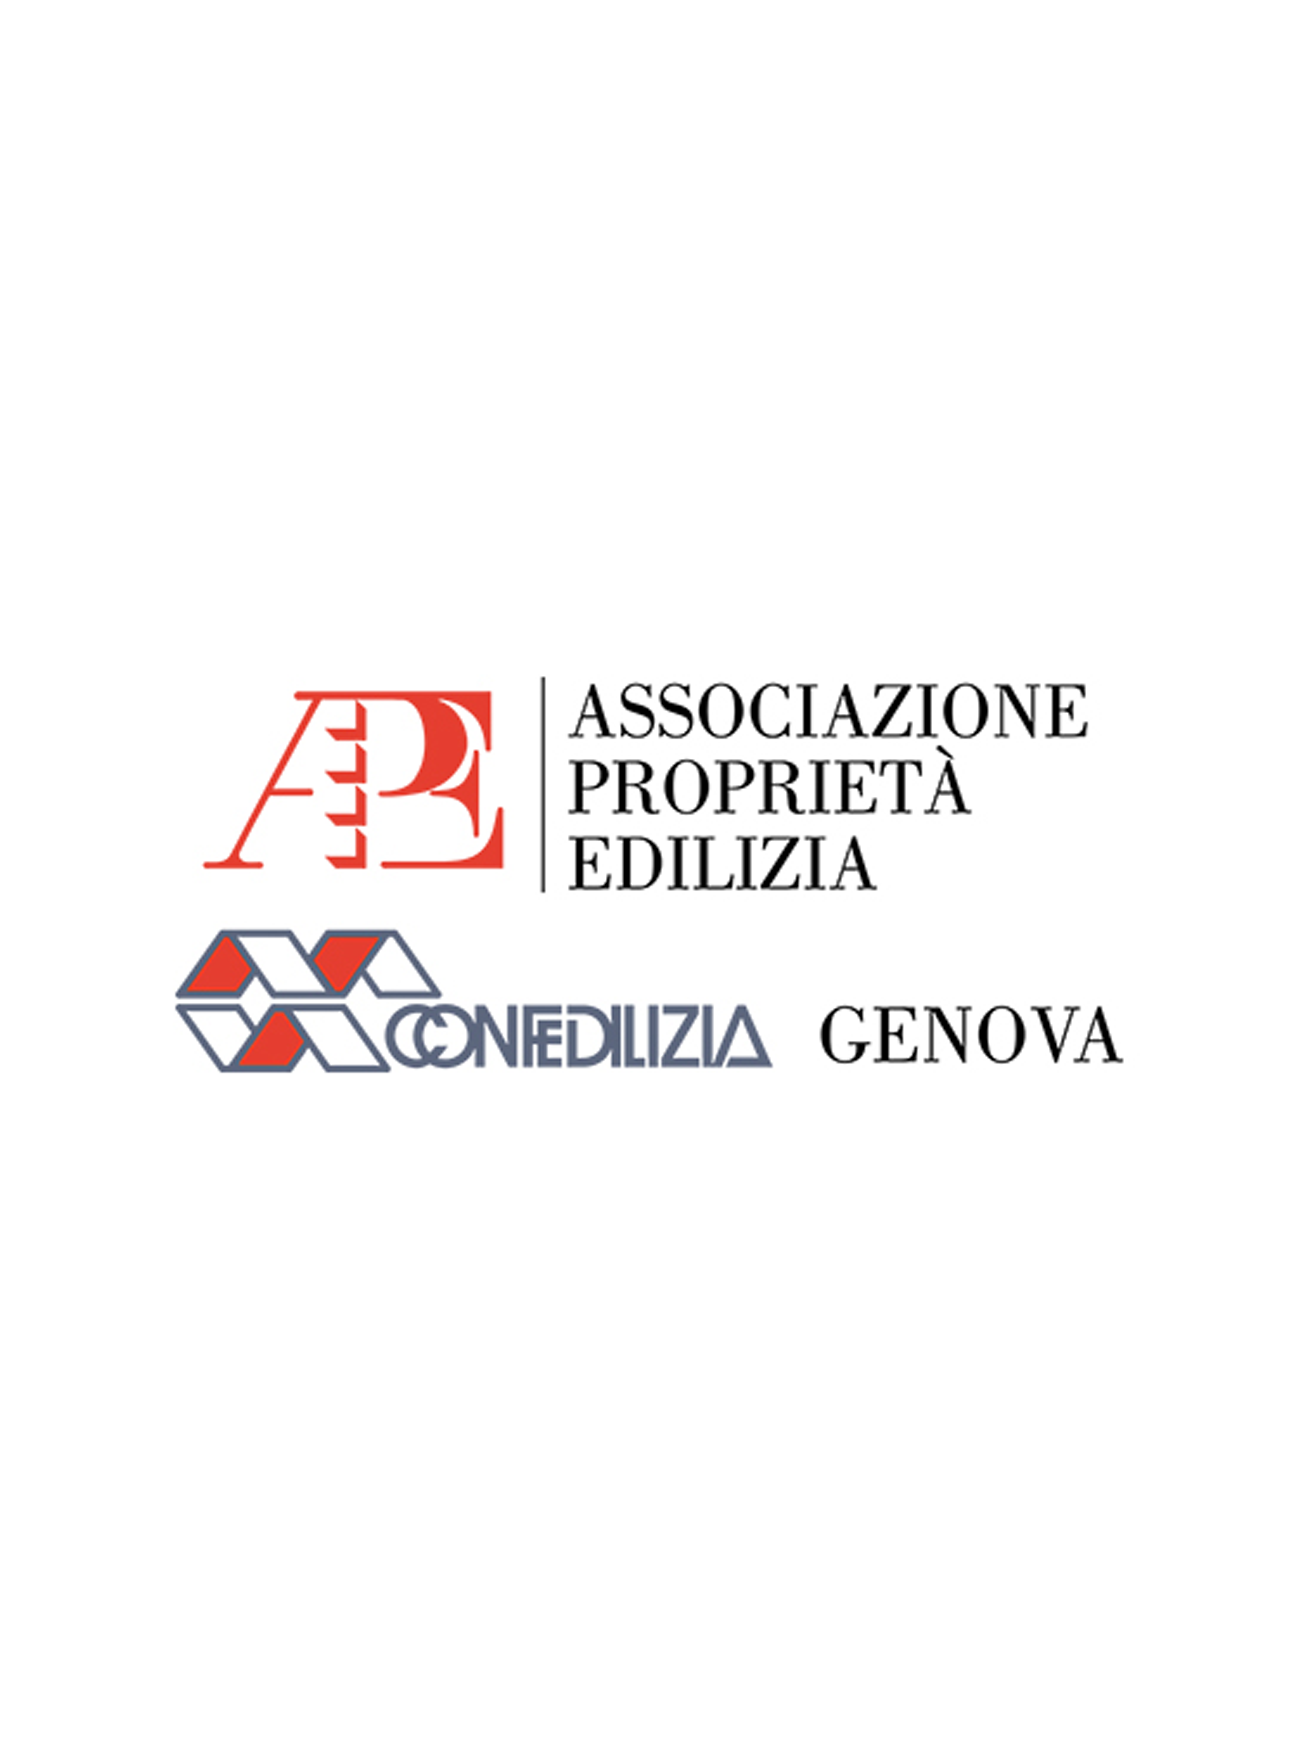 Ape-cofedelizia-Genova-clienti-mercomm-agenzia-comunicazione